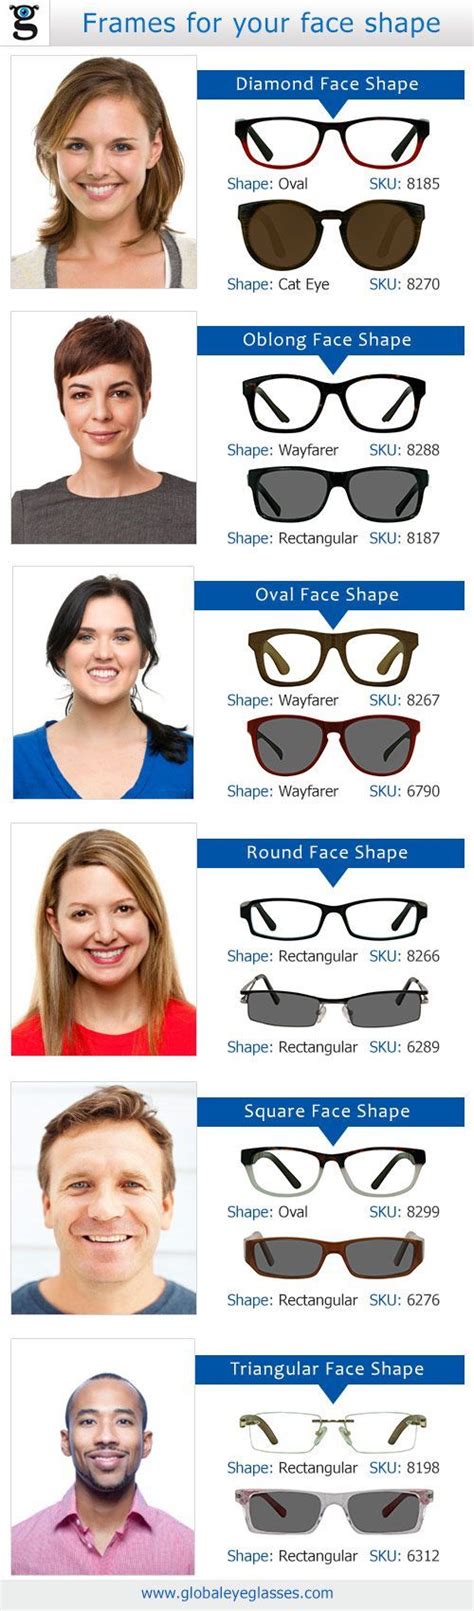 Choosing The Right Eyeglasses Based On Your Faceshape Infographic For Eyeglasses Glasses For